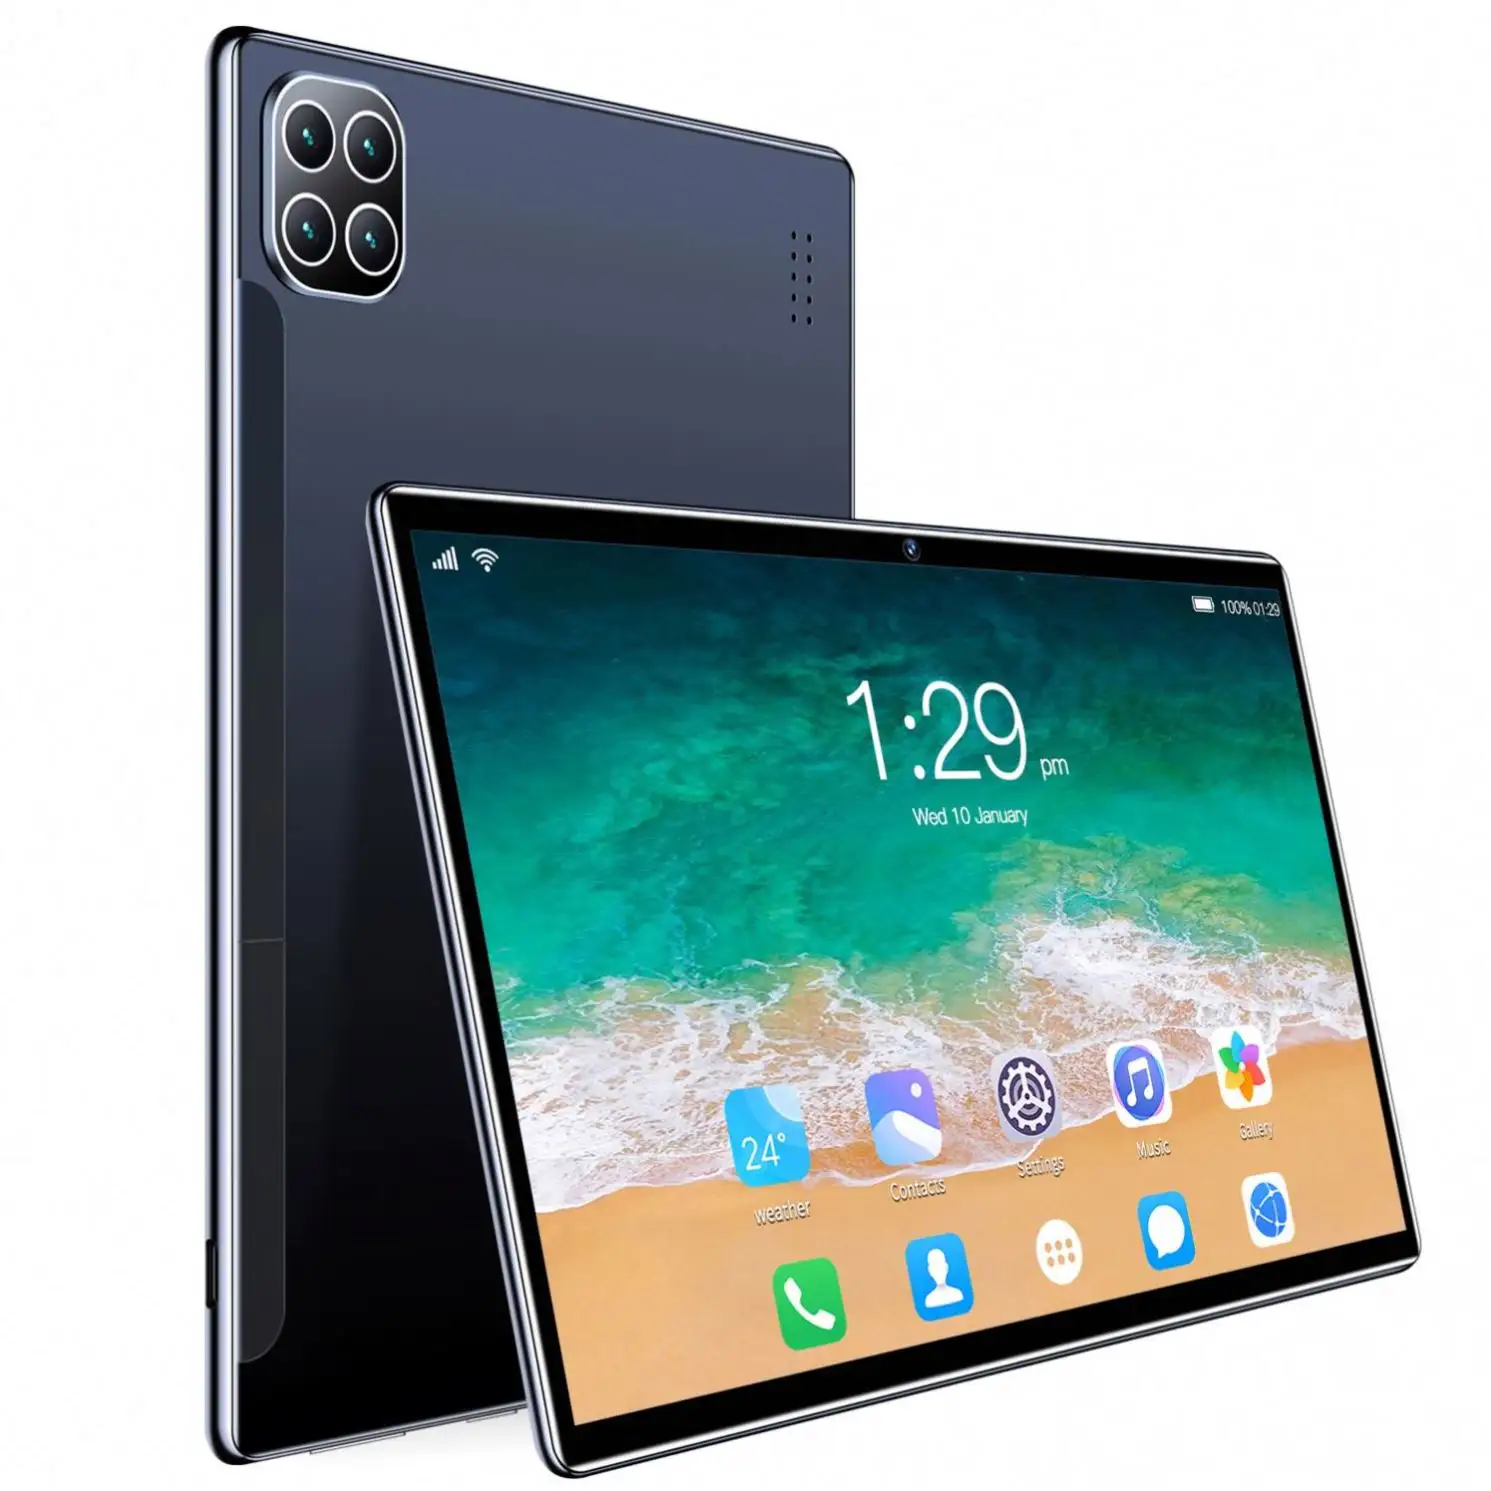 Tablet pc quad core dual sim da 10 pollici tablet android 3g/tablet android da 10.1 pollici più economico